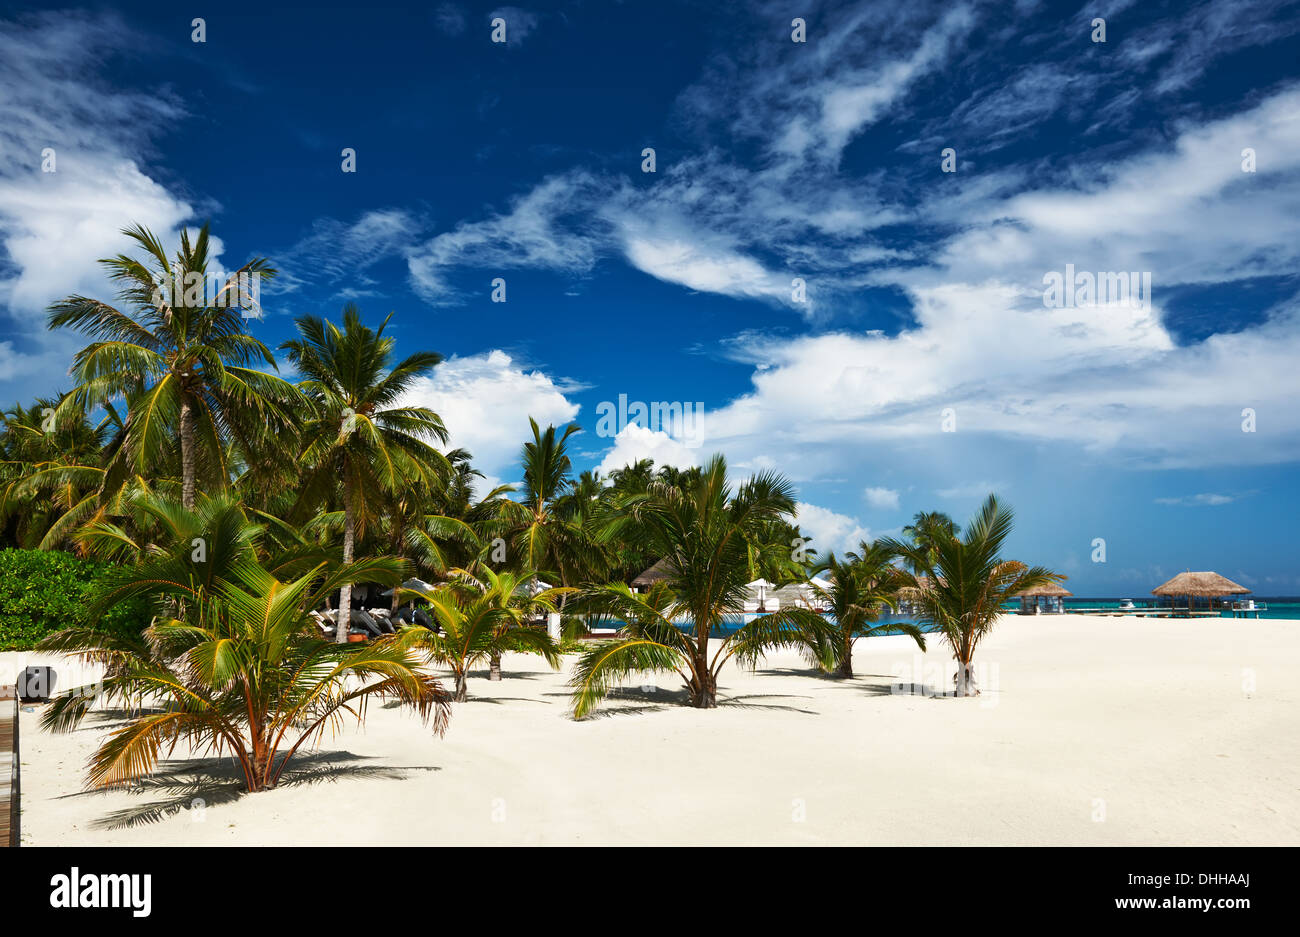 Beautiful beach at Maldives Stock Photo